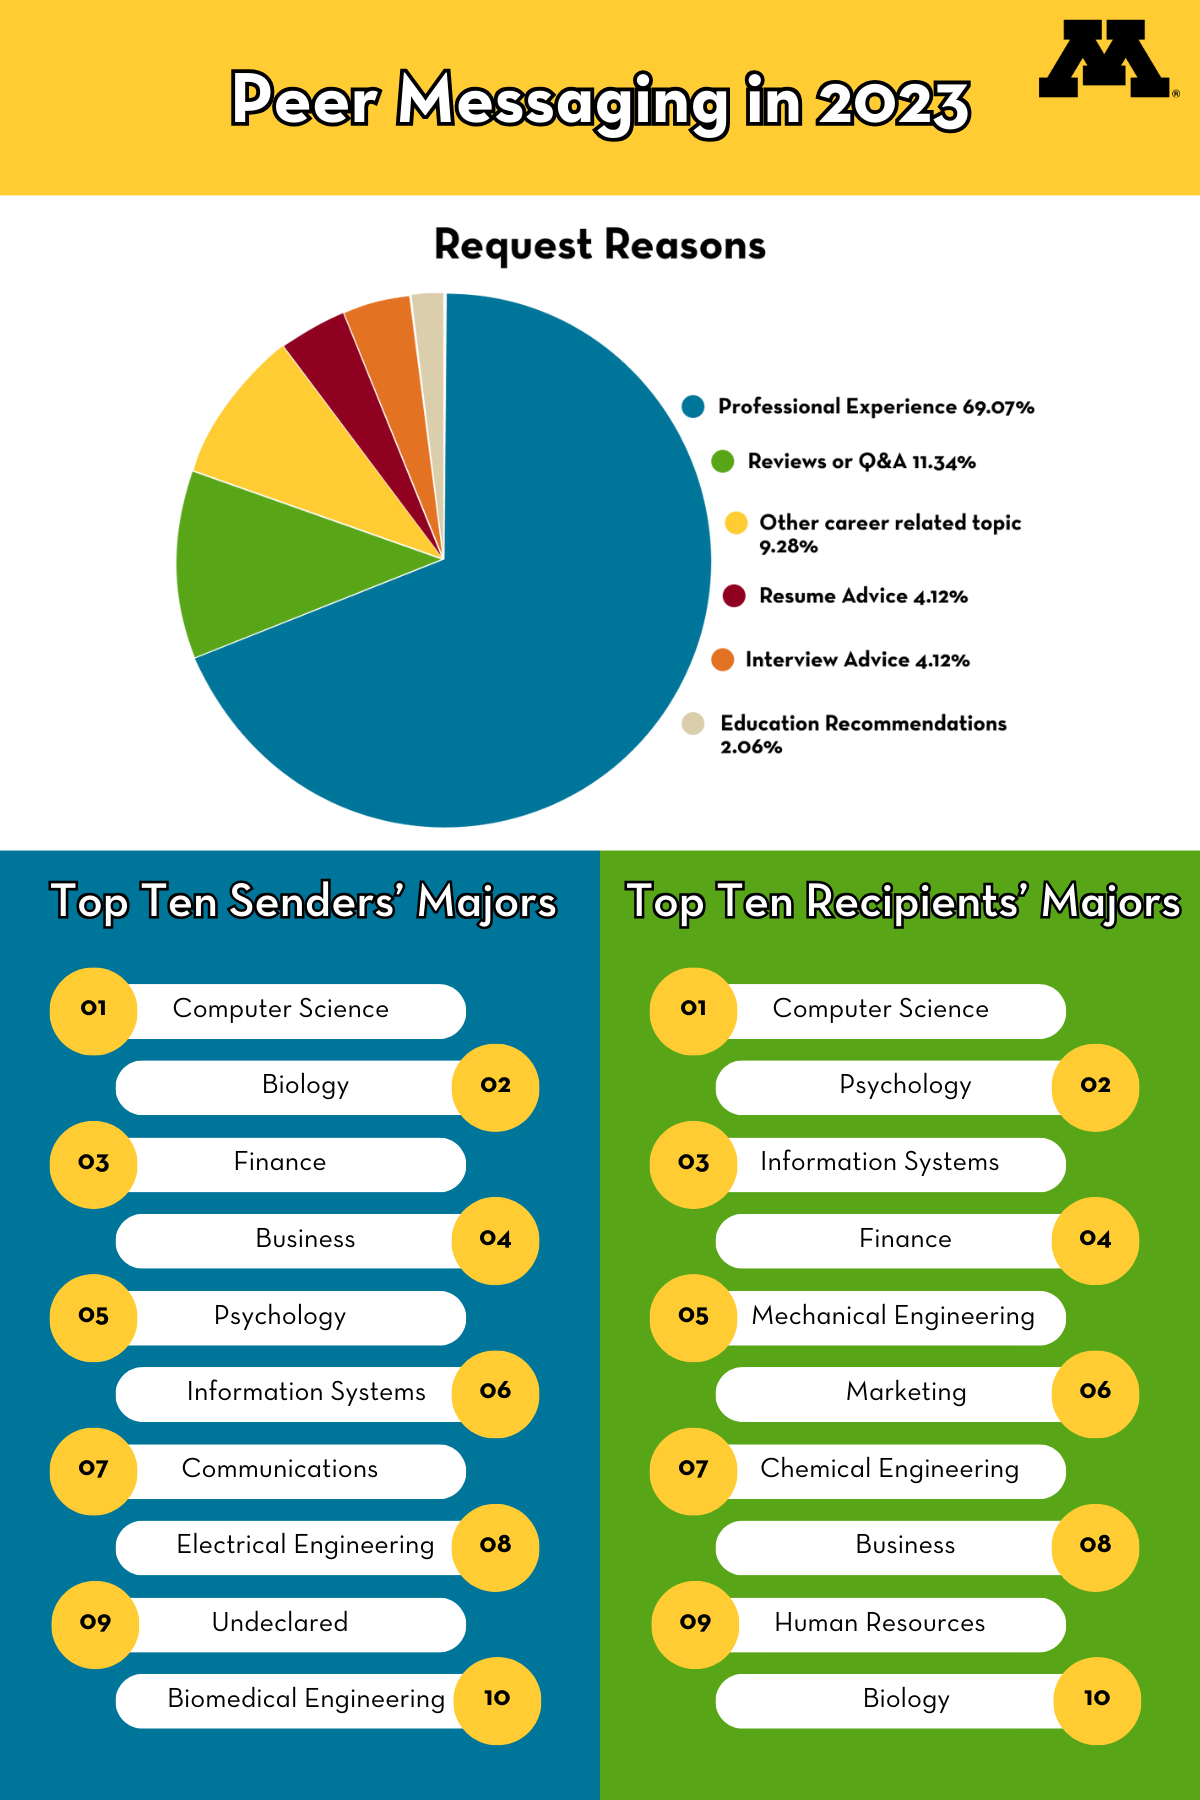 Infographic for peer messaging in 2023 from Handshake. Statistics for request reasons, top ten senders' majors, and top ten recipients' majors.